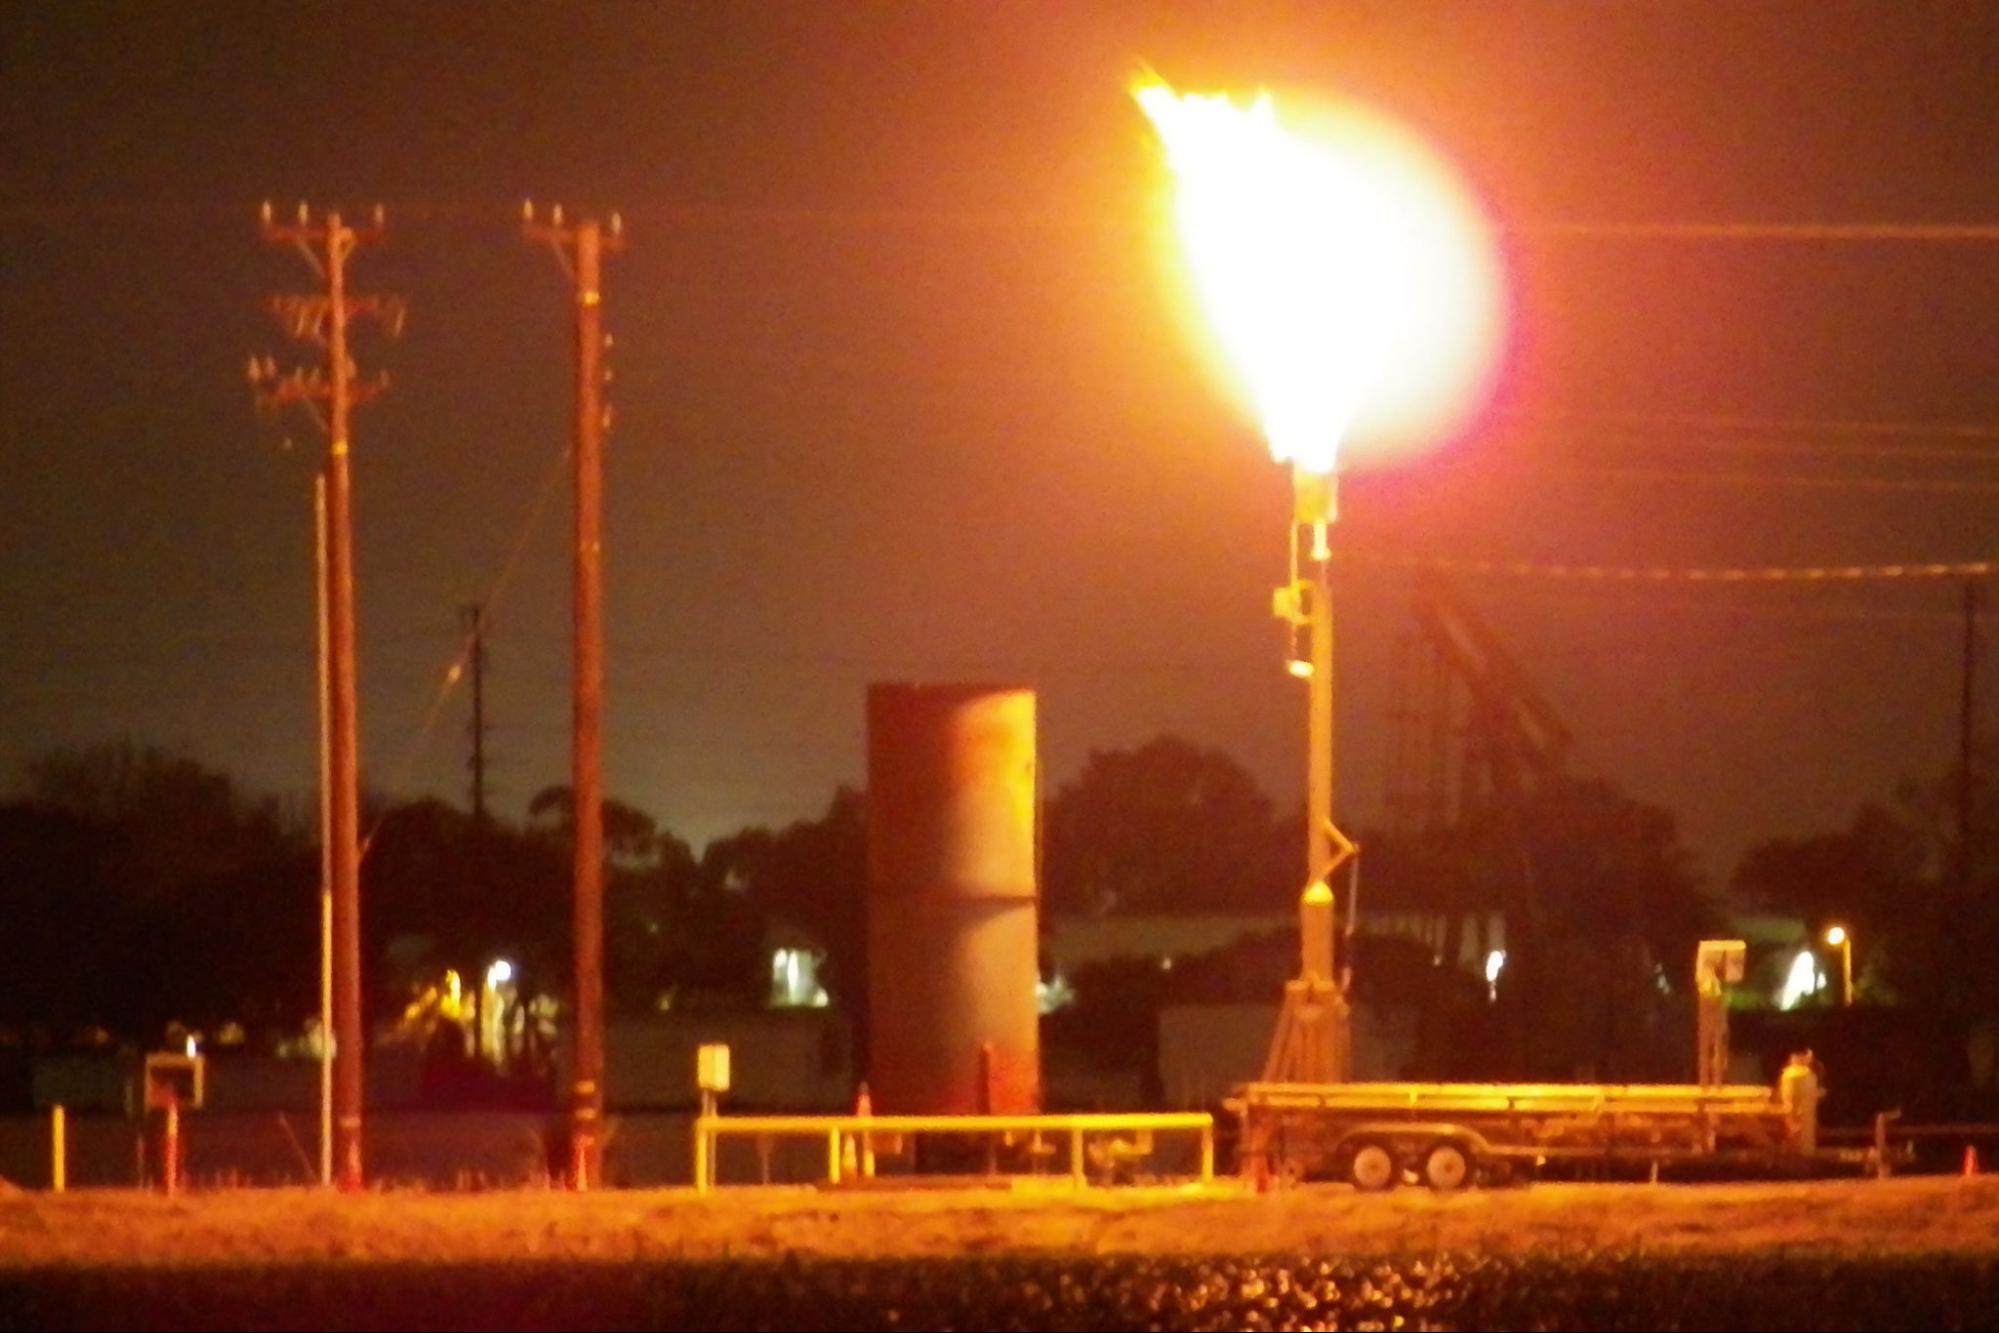 Oil well, flaring methane gas, Oxnard